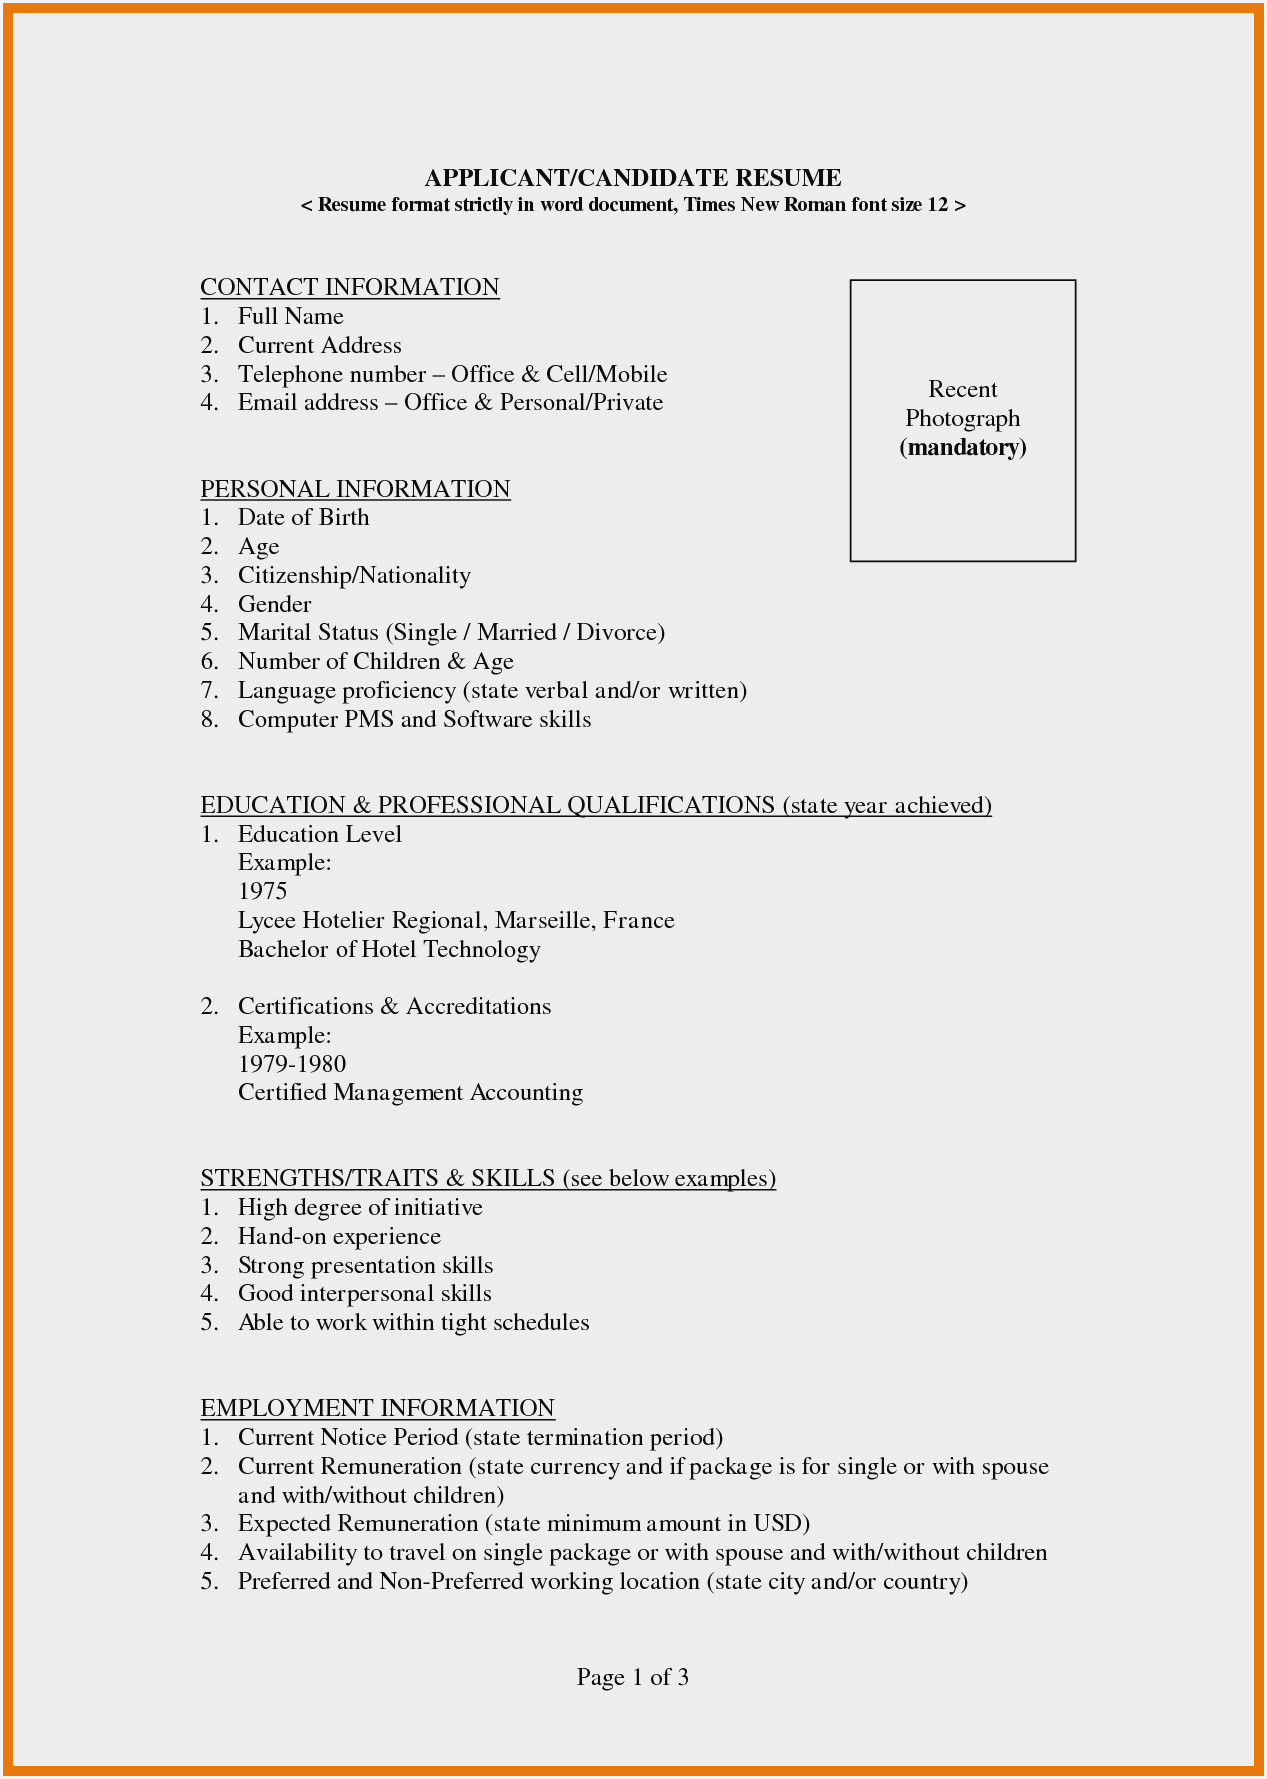 resume format for hotelml